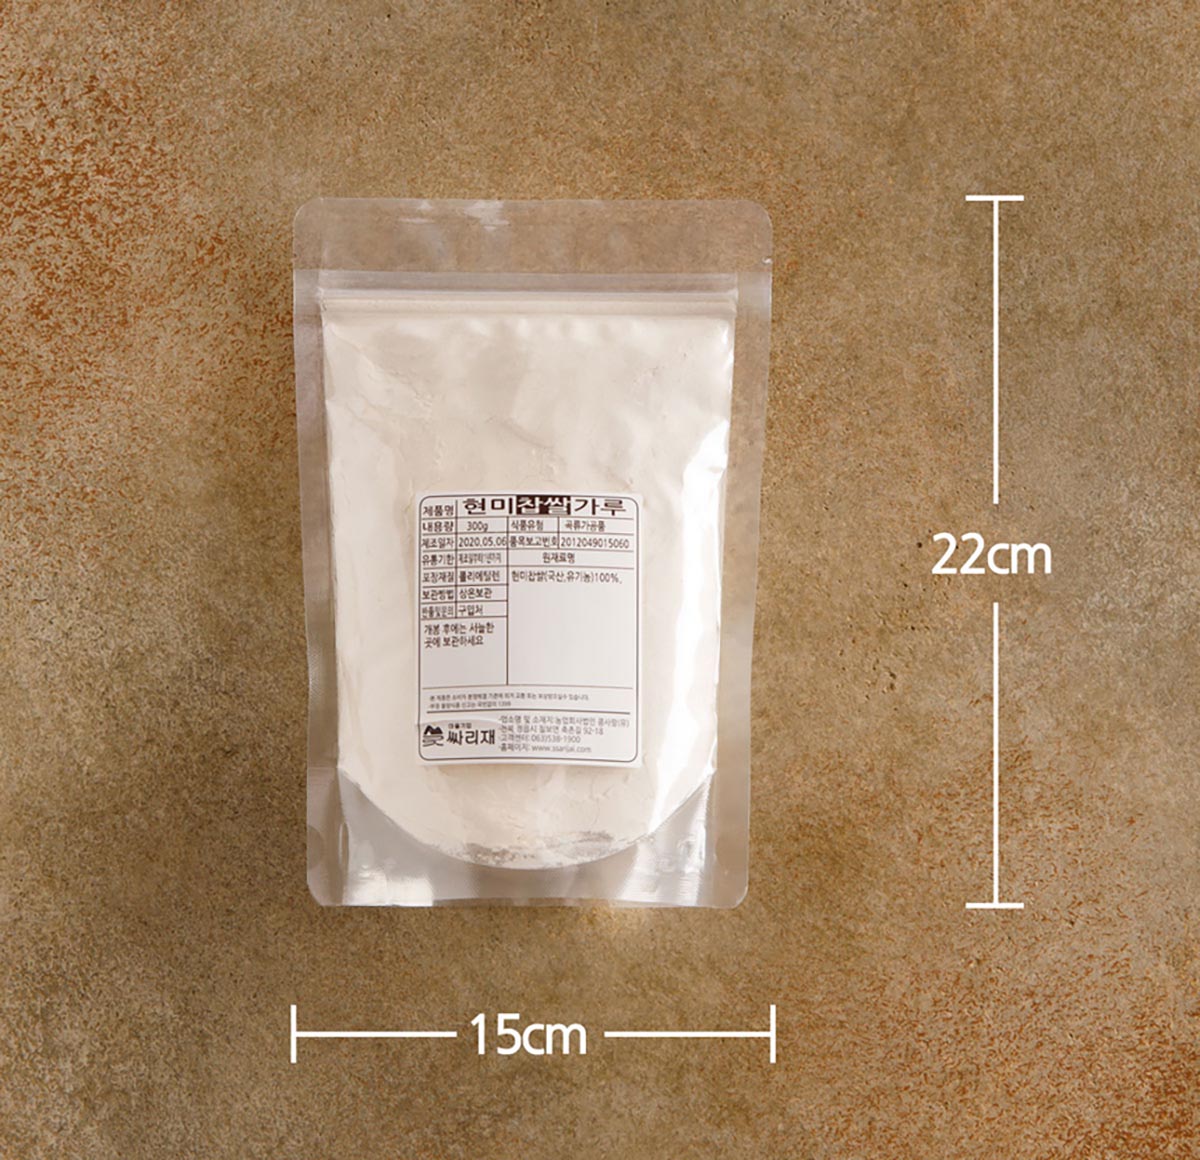 투명한 지퍼 포장지에 하얀 쌀가루를 담아 포장한 제품을 테이블에 놓은 모습.